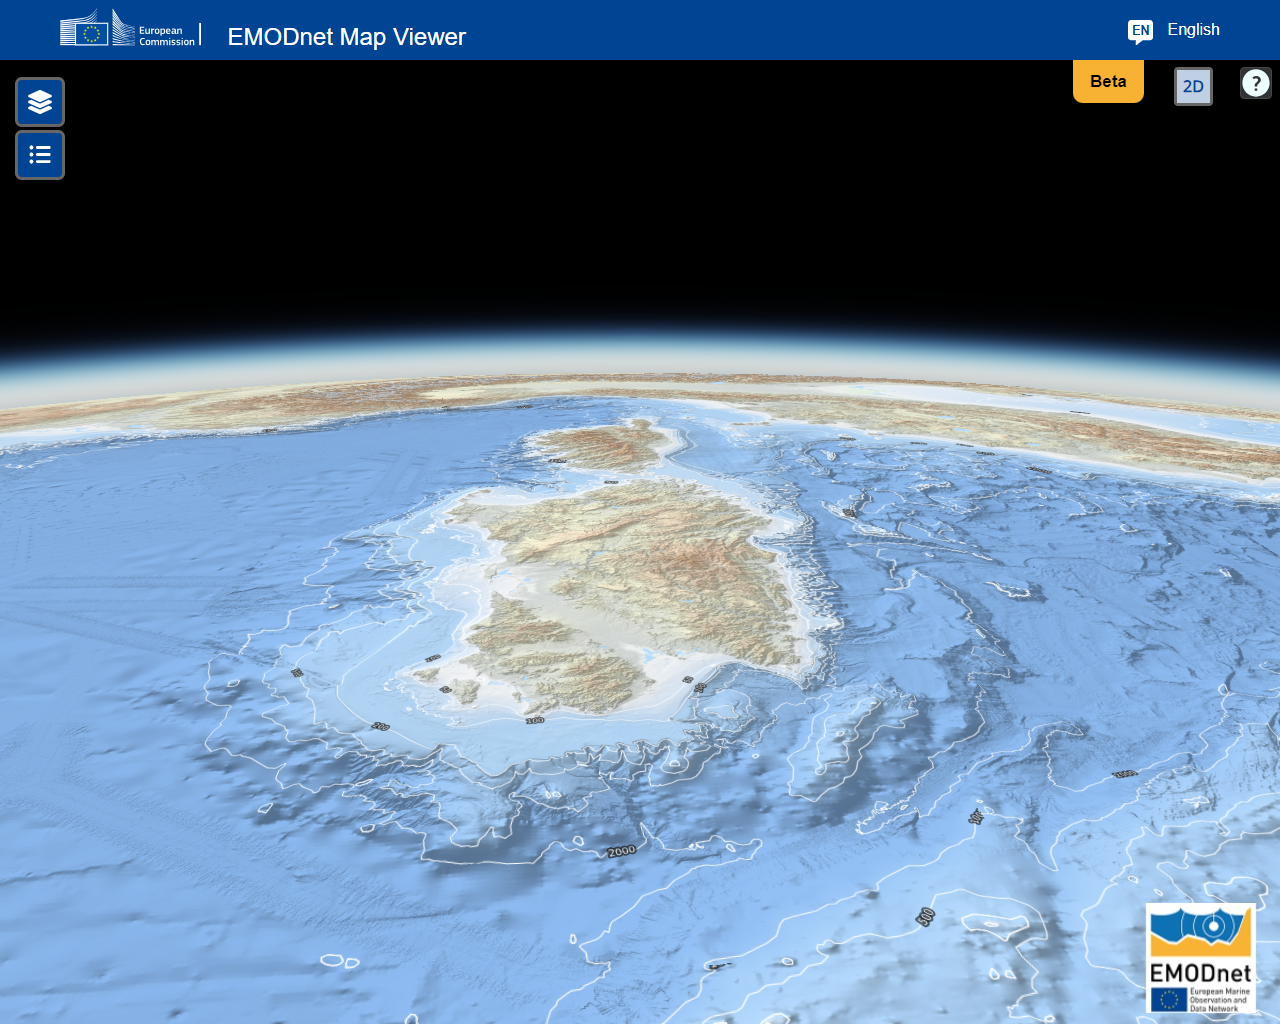 Ozeano Atlantiko Mesolitikoko 3D batimetria gaur egun Mediterraneo itsasoa izenez ezagutzen dena 4